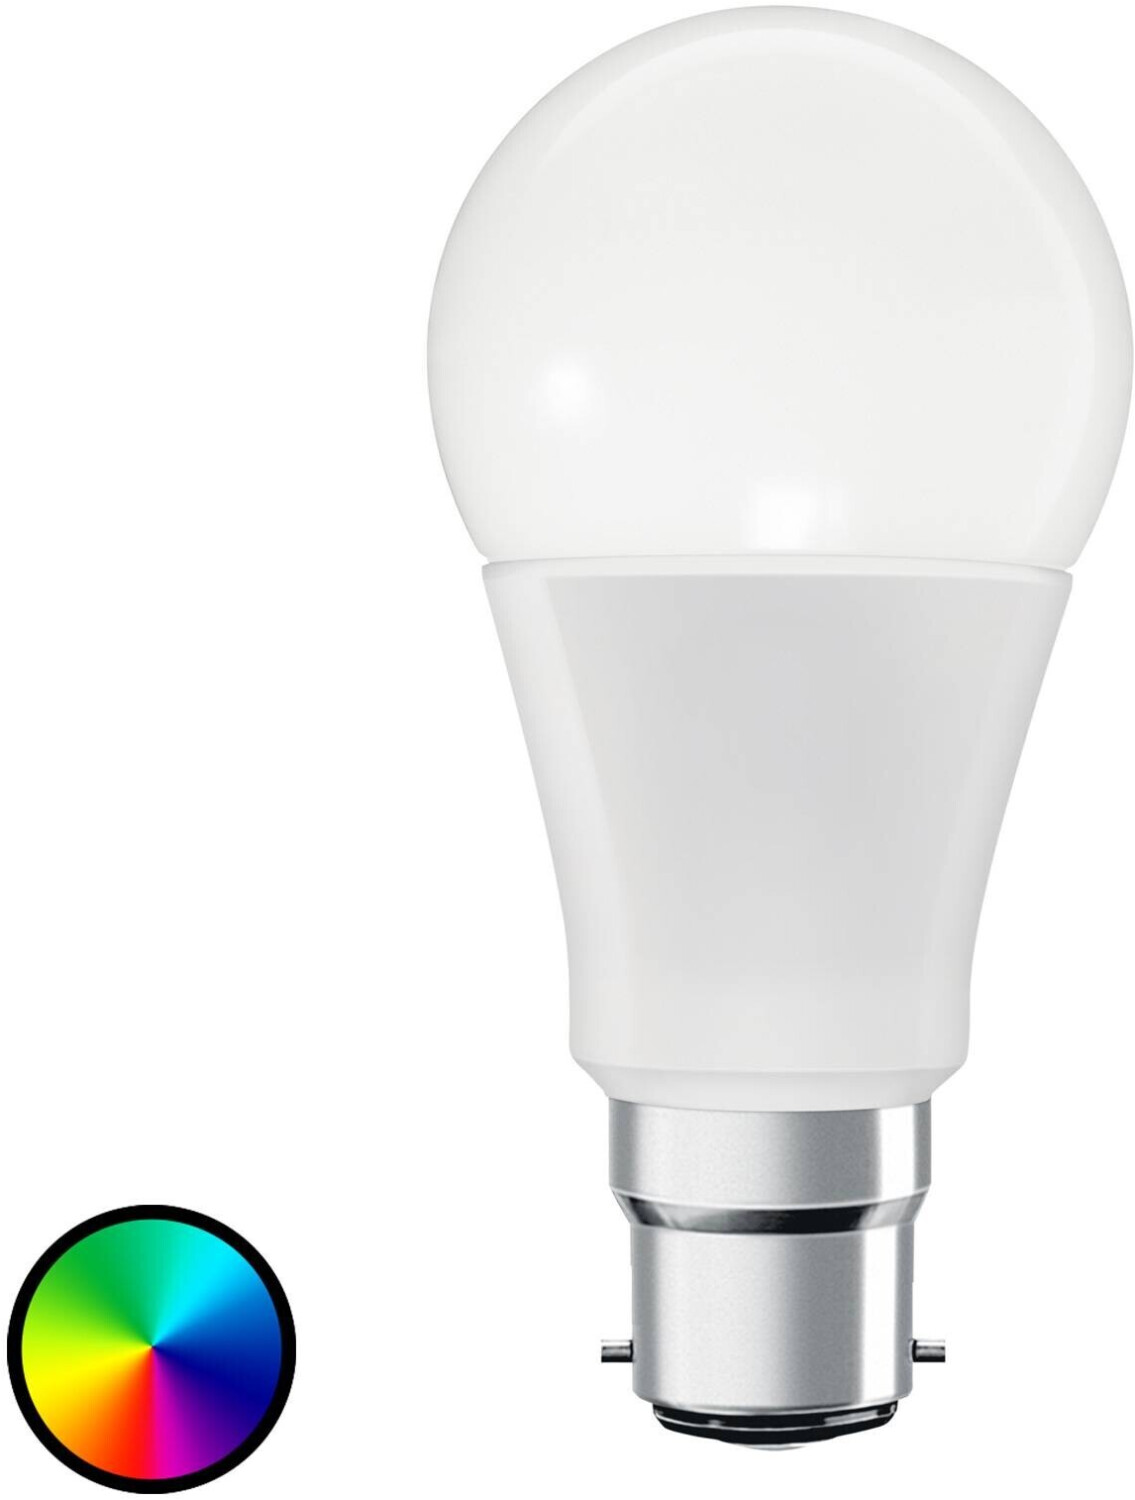 Ampoule LED GU10 LedVance 7,9 W à intensité variable 60º